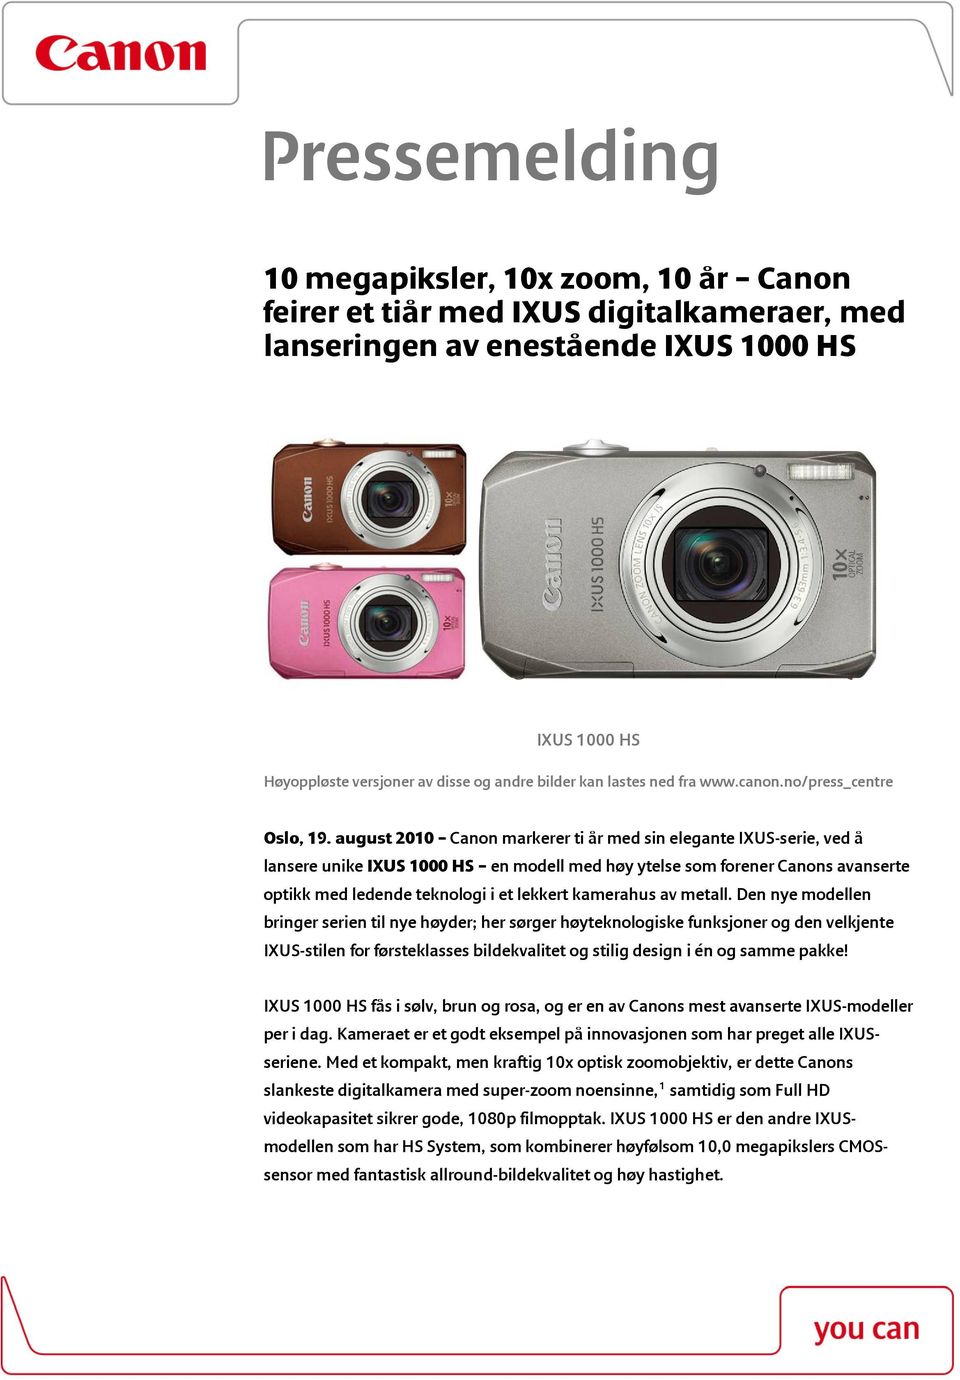 august 2010 Canon markerer ti år med sin elegante IXUS-serie, ved å lansere unike IXUS 1000 HS en modell med høy ytelse som forener Canons avanserte optikk med ledende teknologi i et lekkert